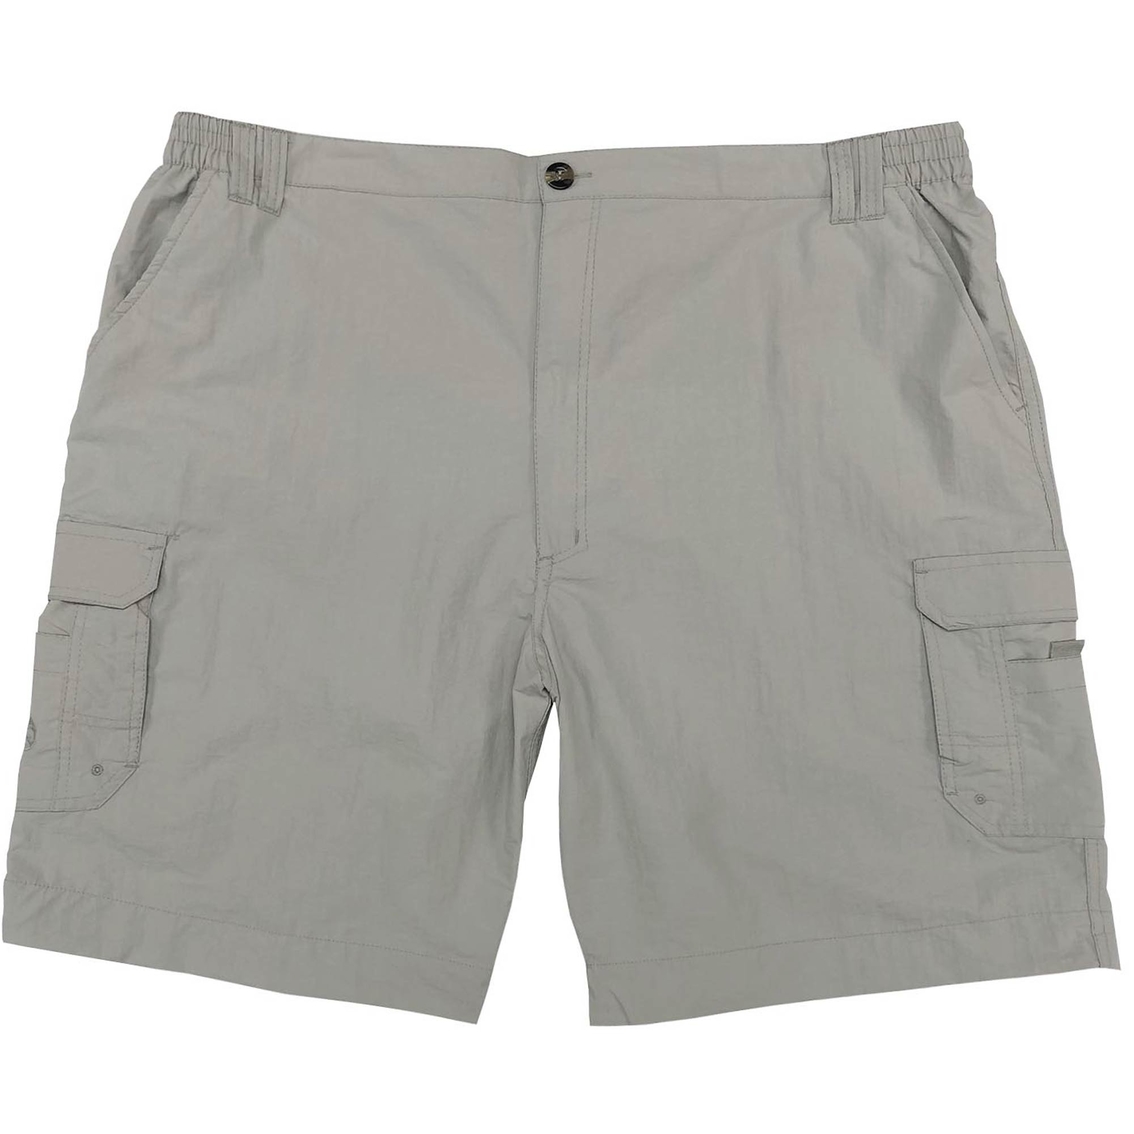 Realtree Fishing Shorts, Shorts, Clothing & Accessories